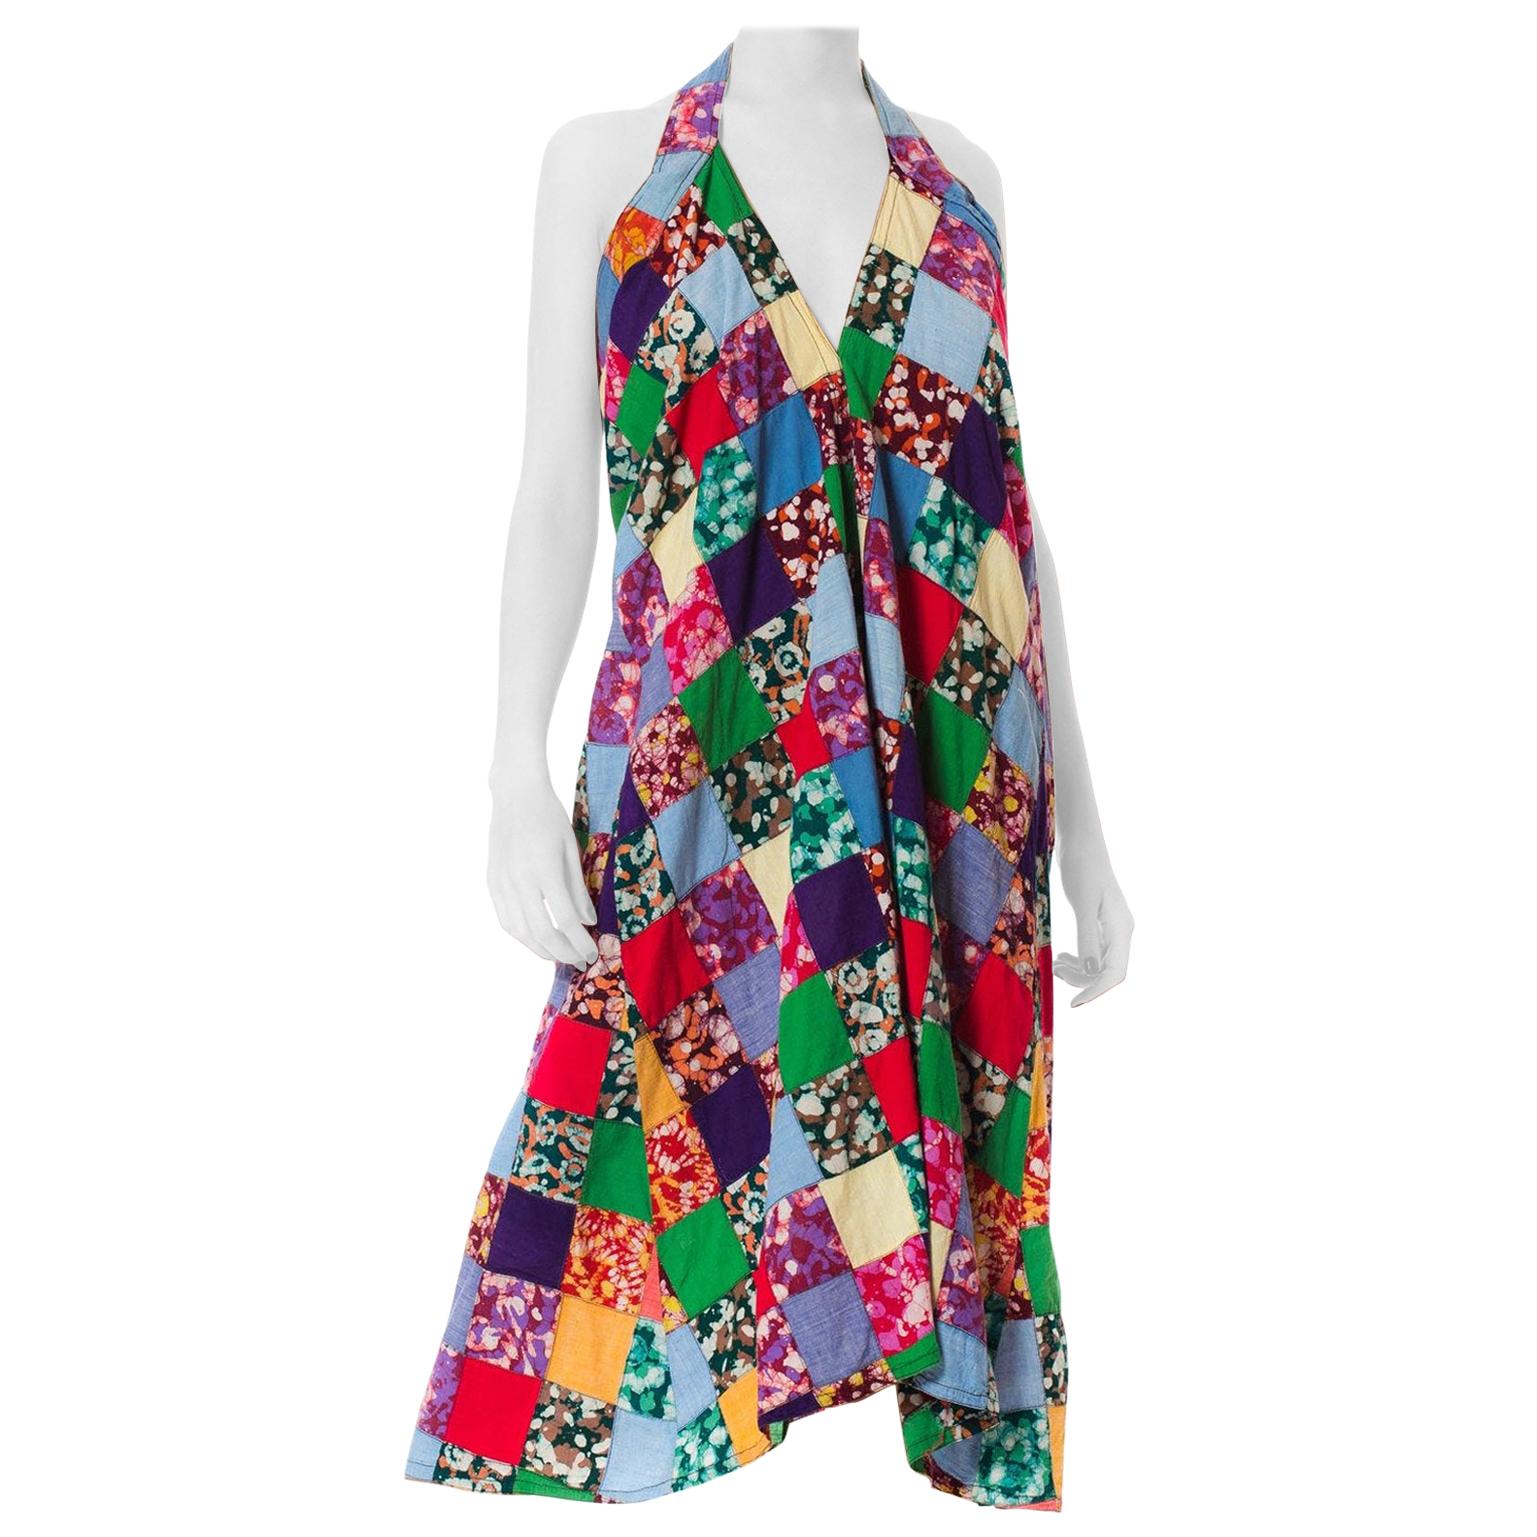 MORPHEW COLLECTION Multicolor Patchwork Cotton Batik Summer Halter Dress